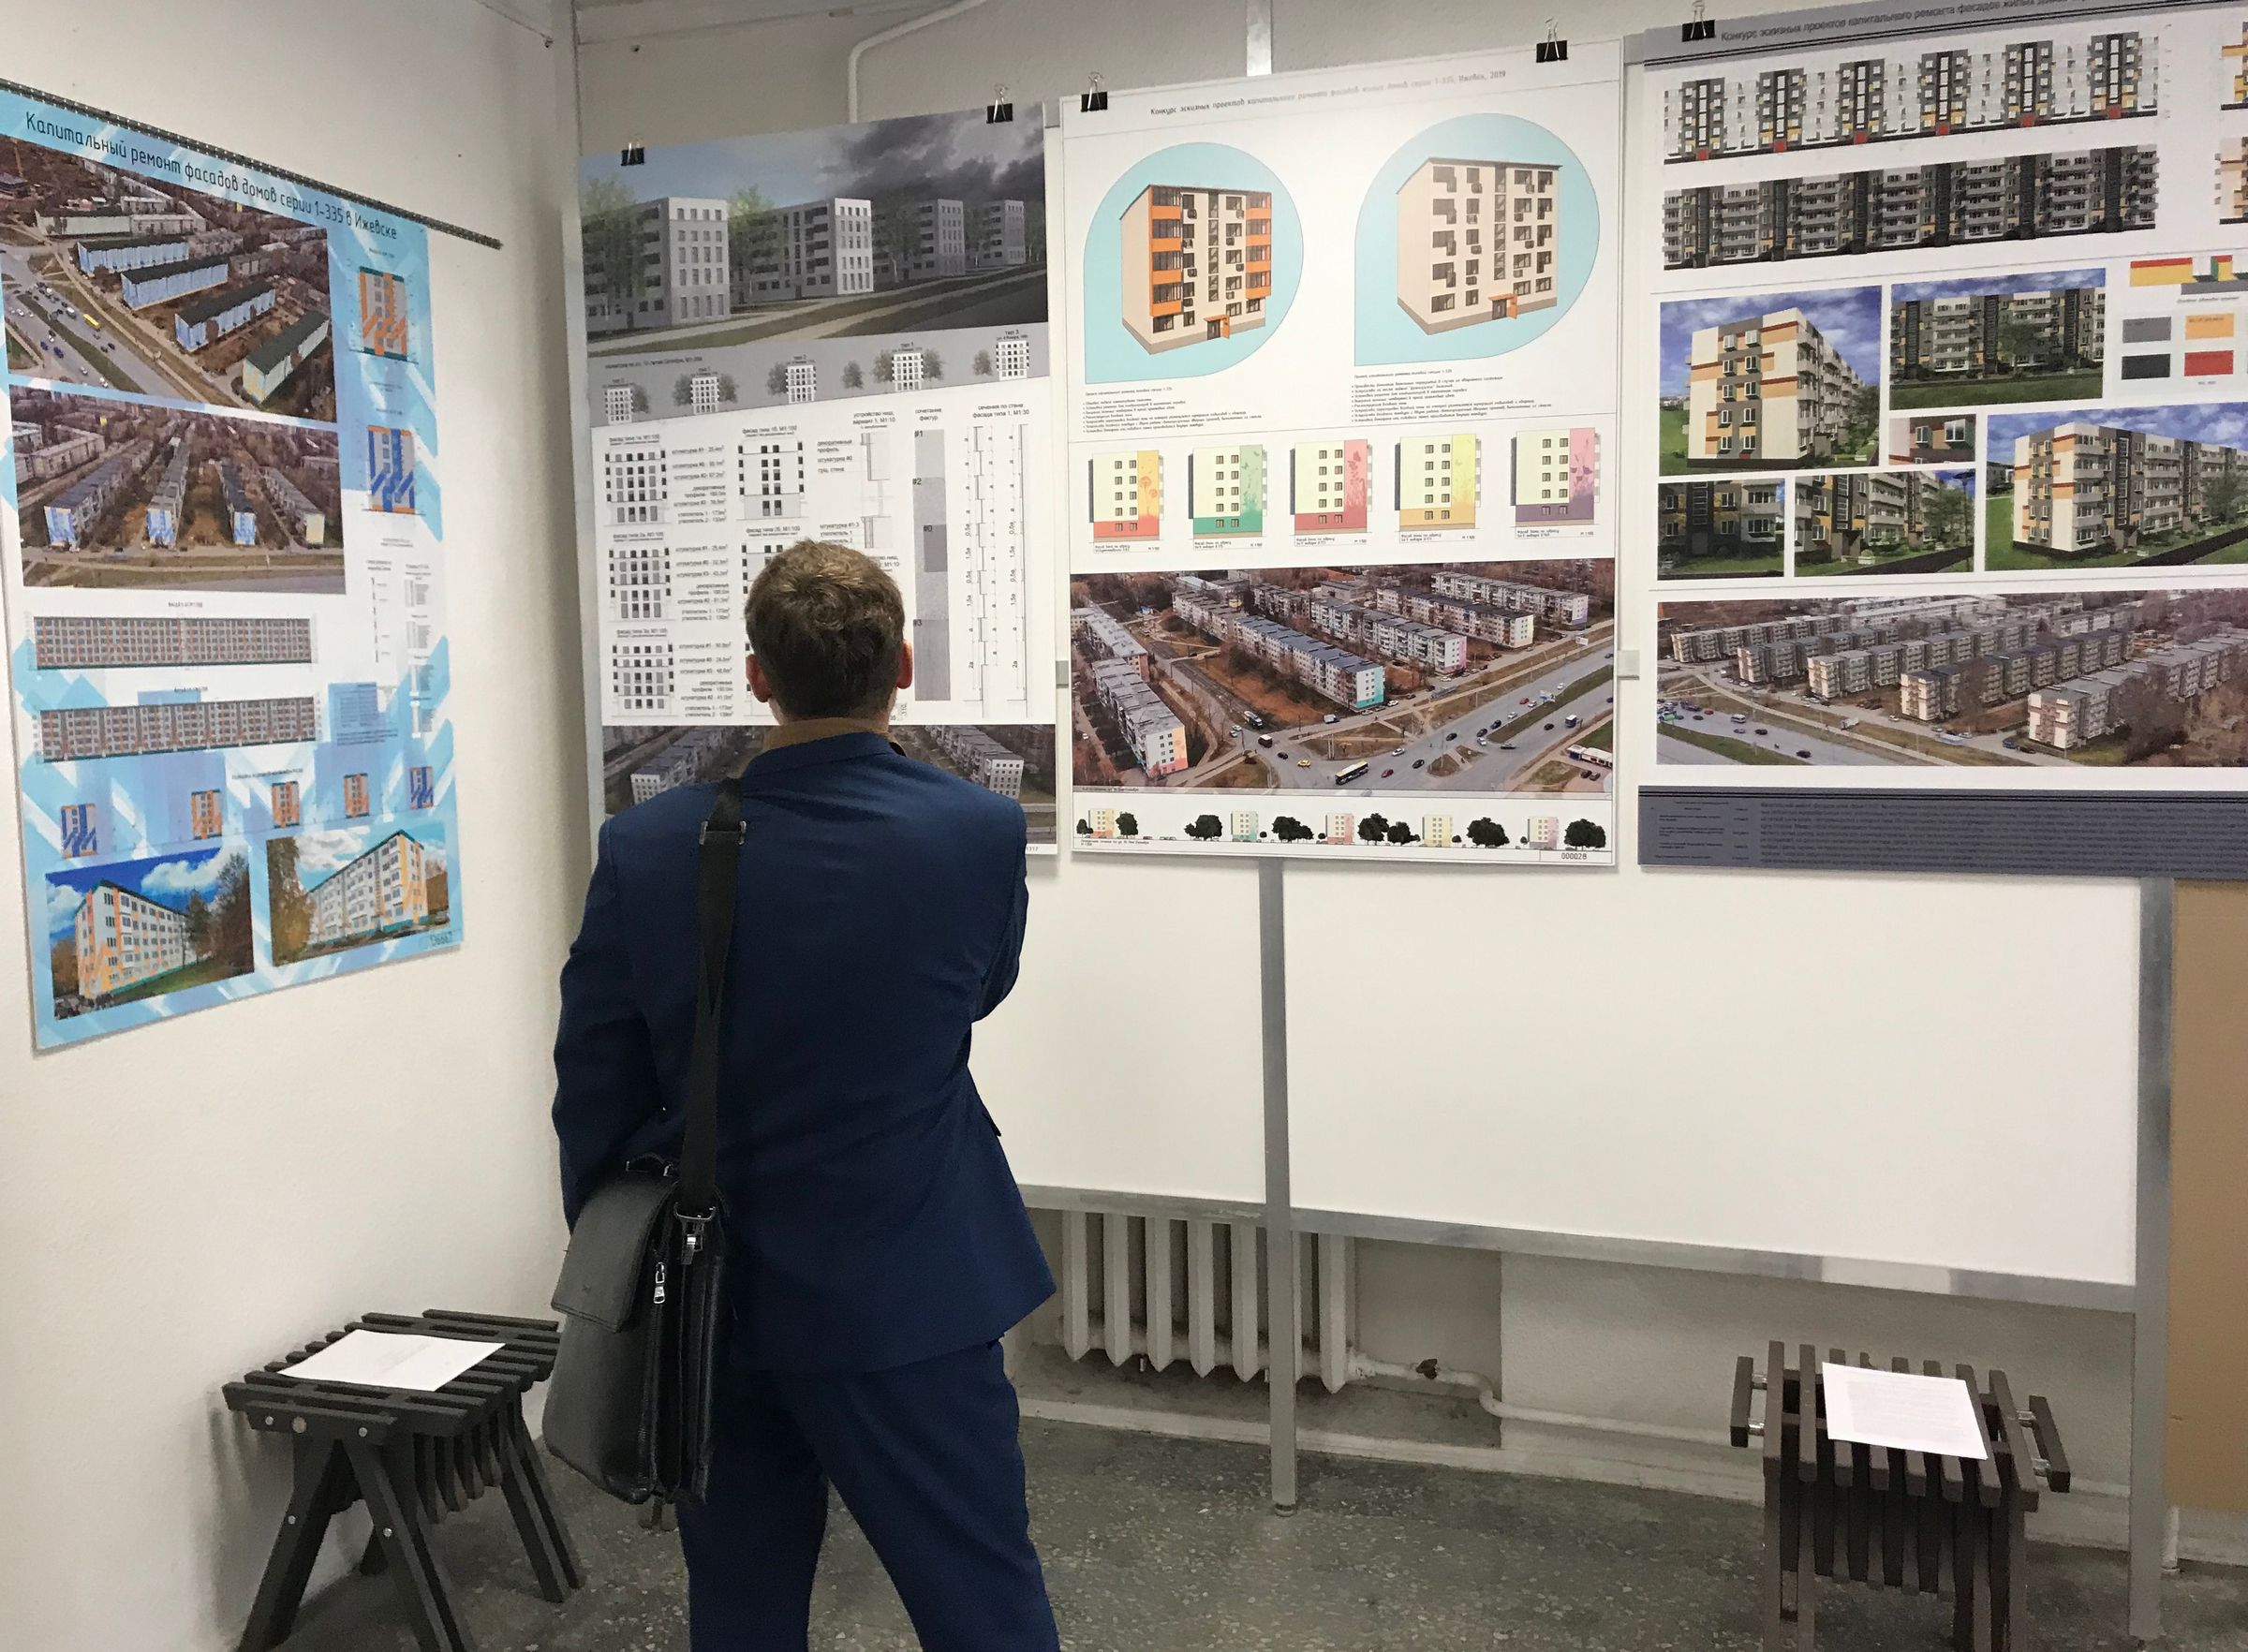 архитектурный конкурс эскизных проектов капитального ремонта фасадов жилых домов серии 1-335 в Индустриальном районе города Ижевска 2019